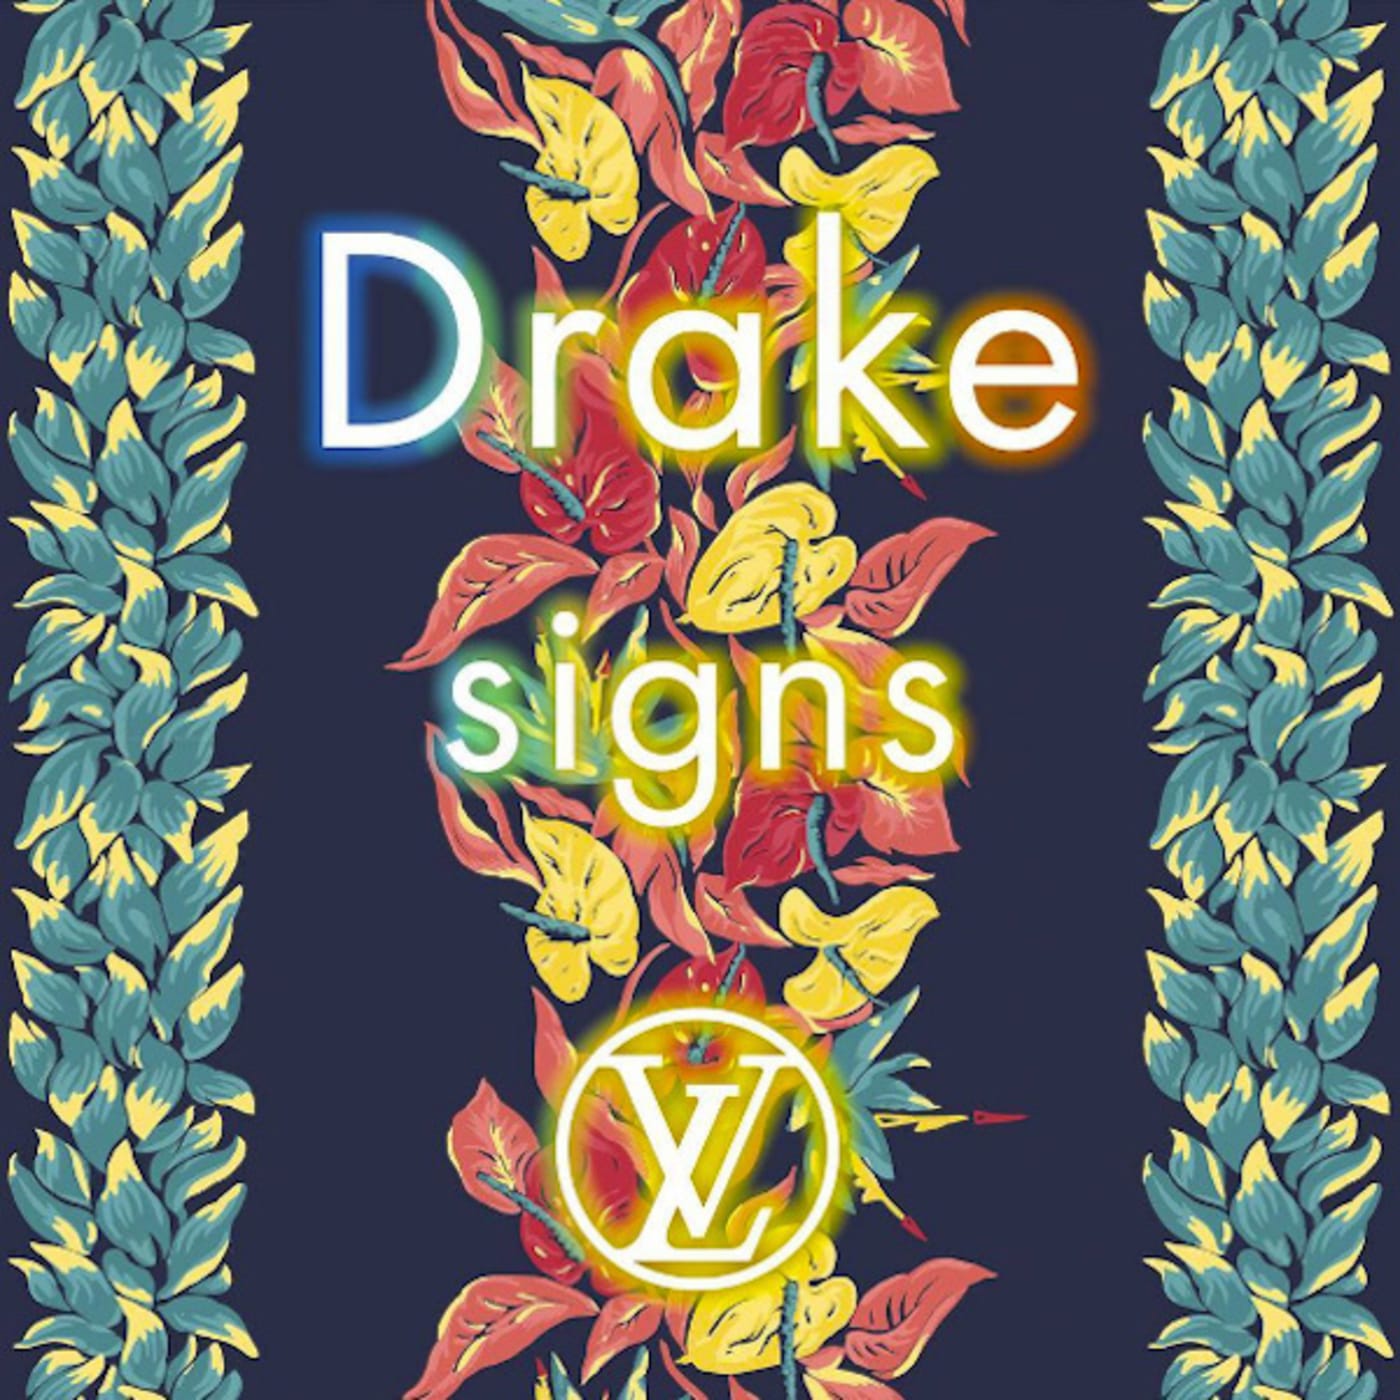 Drake Signs